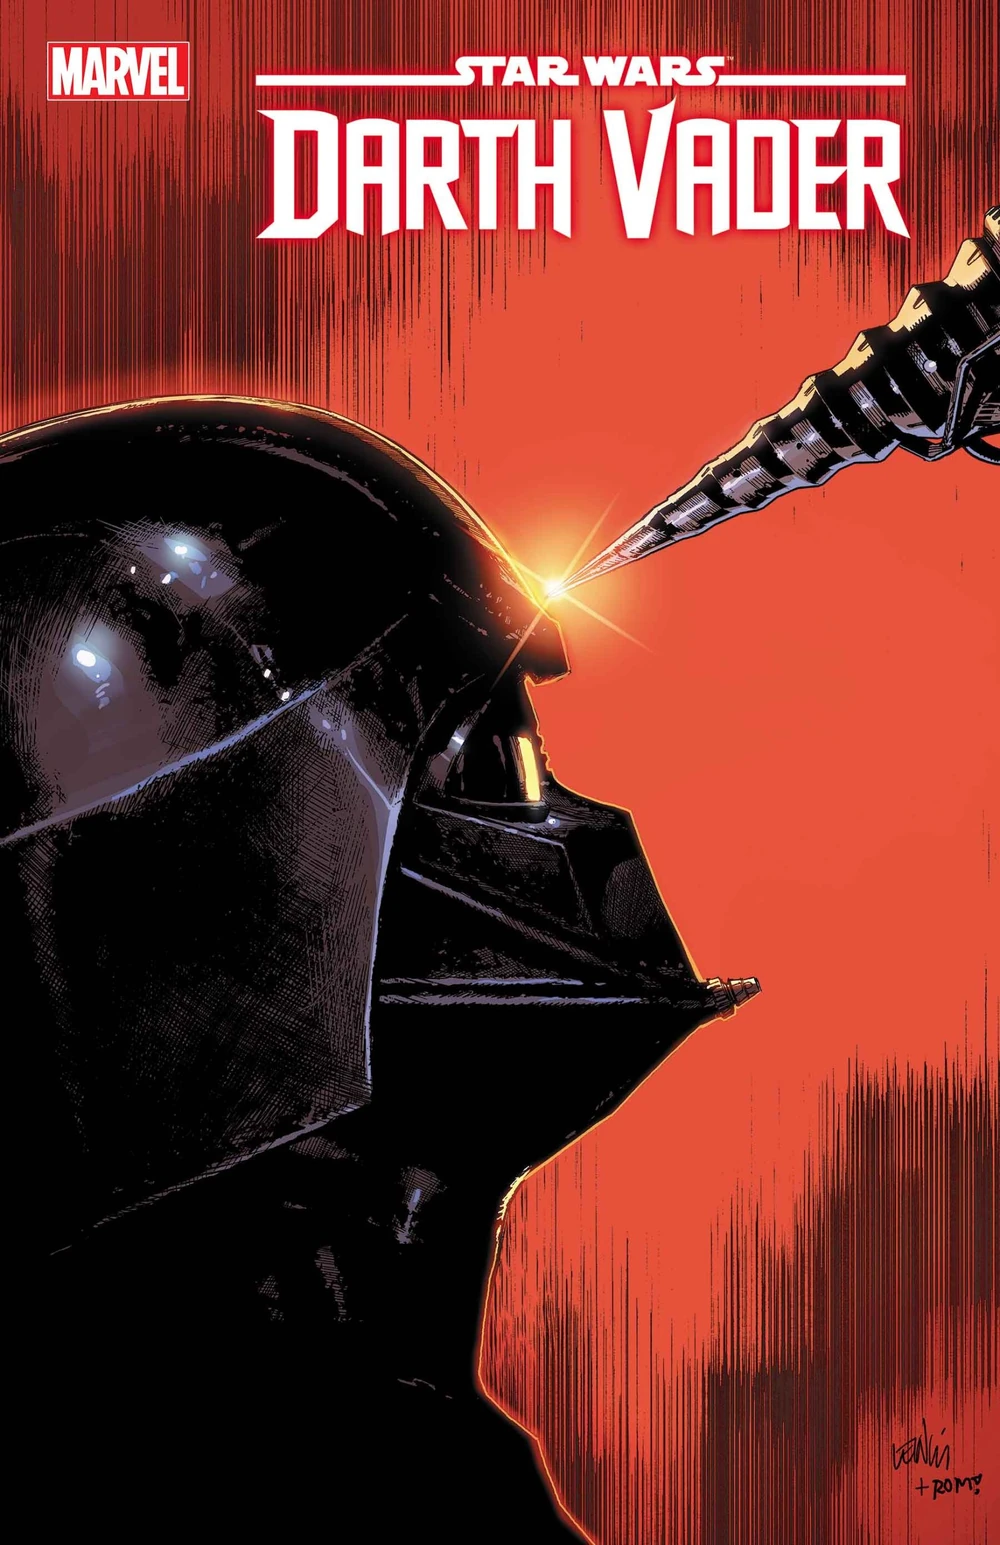 Star Wars: Darth Vader #49